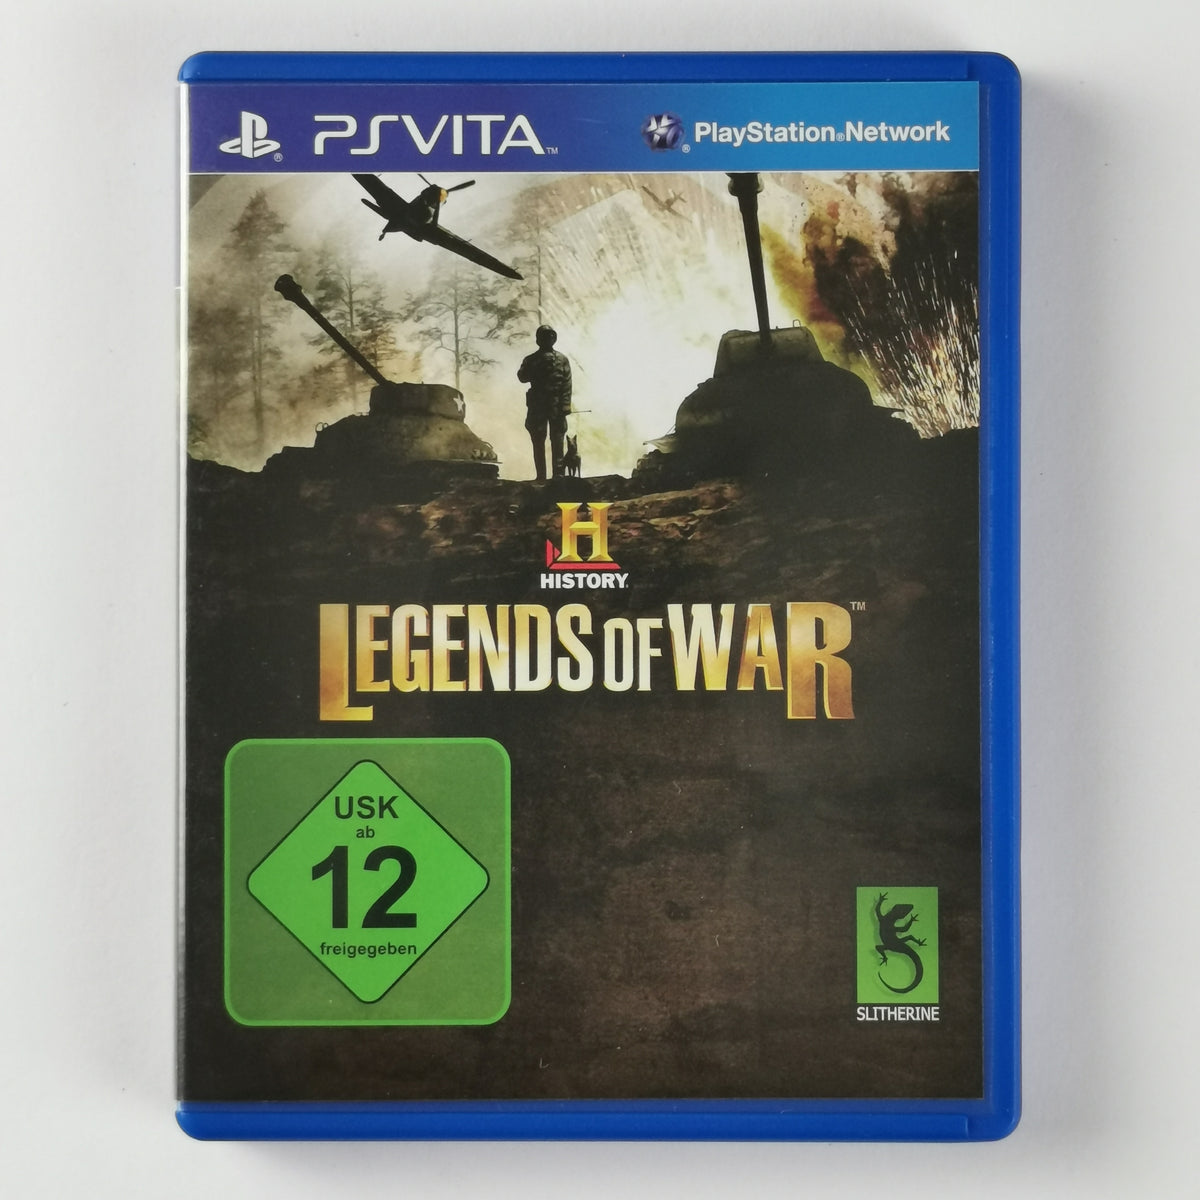 HISTORY: Legends of War [PSV]